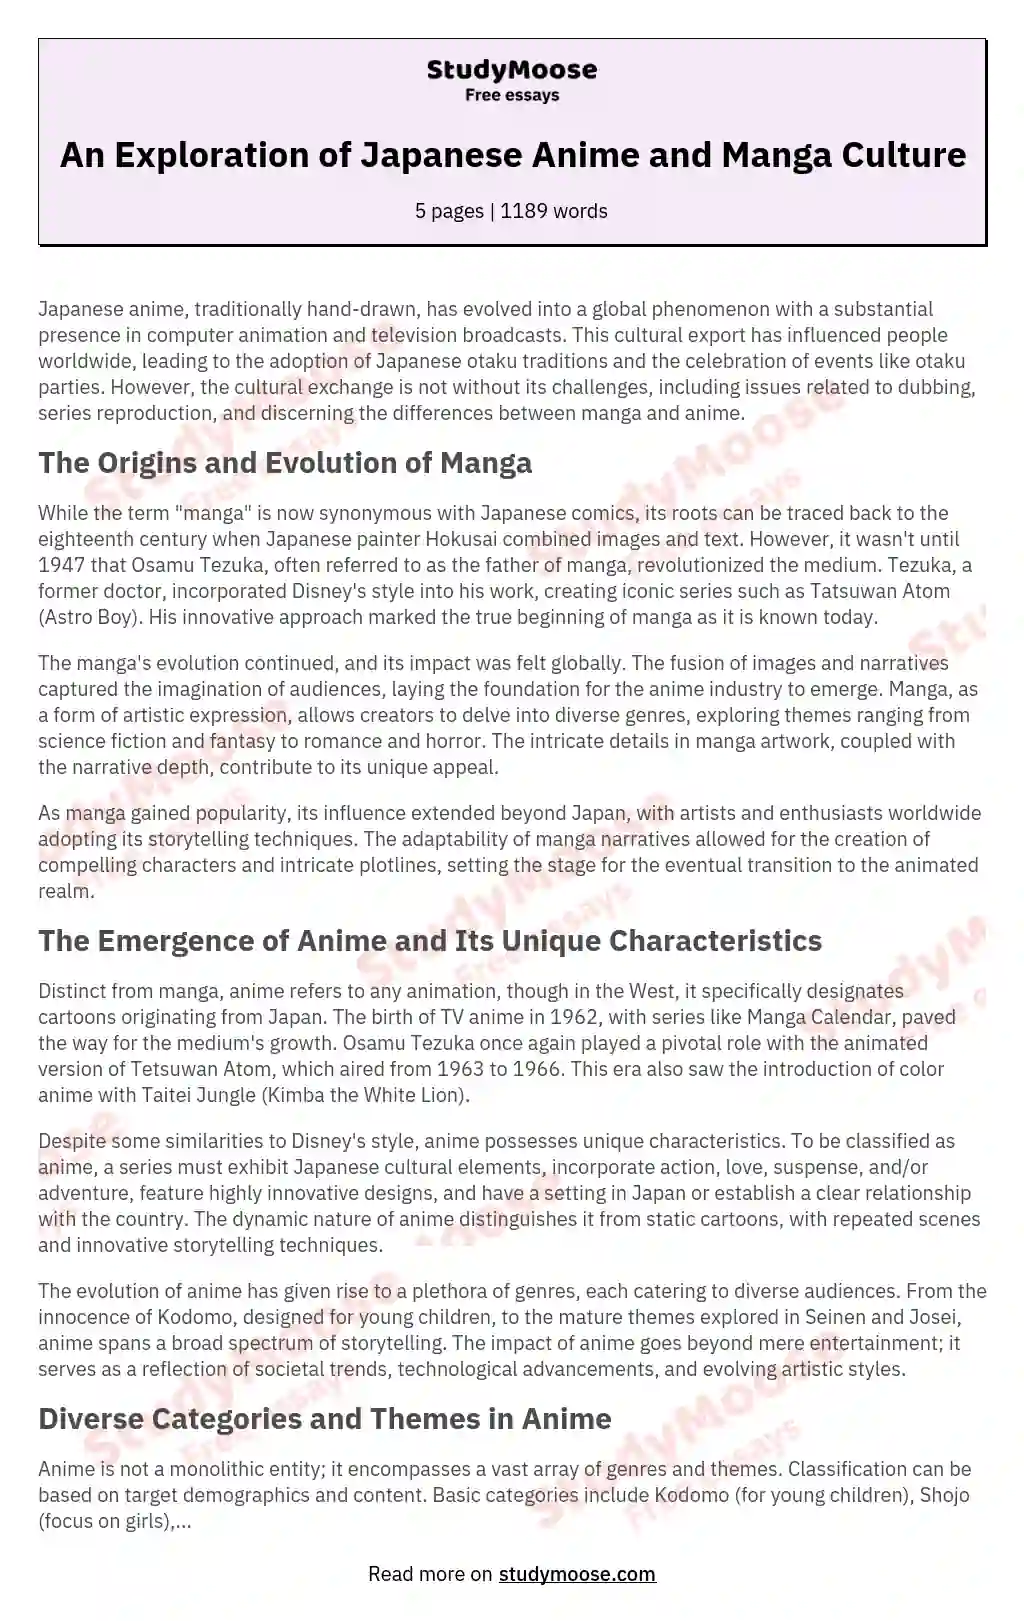 Anime Is Not a Cartoon